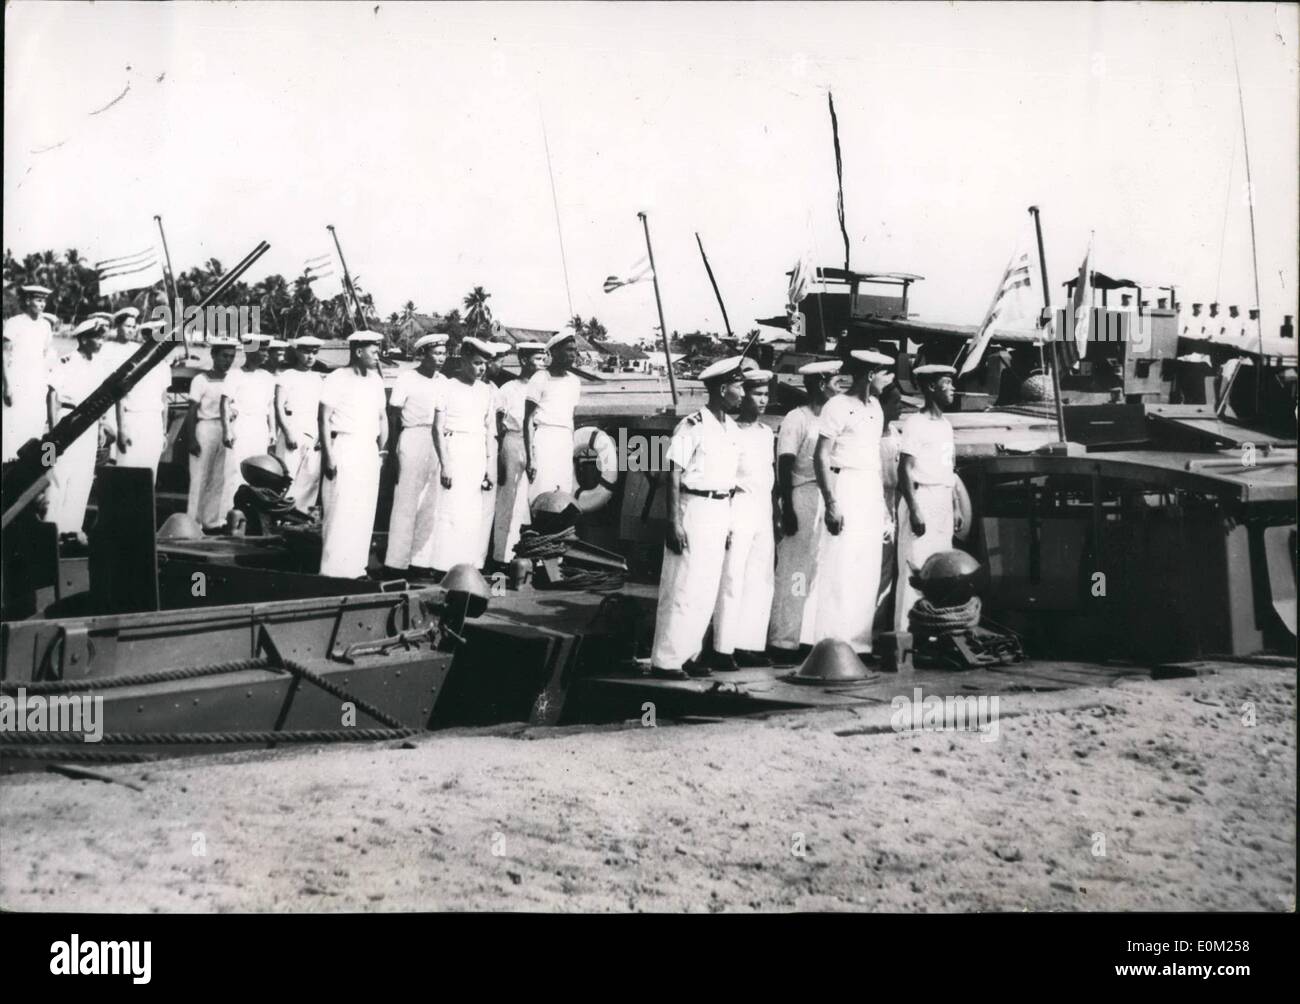 Apr. 04, 1953 - Indo Cina: Base Navale passa al Vietnam Marines. La cerimonia al Assaut de Cantho (Indo Cina) quando un francese di base navale è stato consegnato al Vietnam marinai. Foto Stock